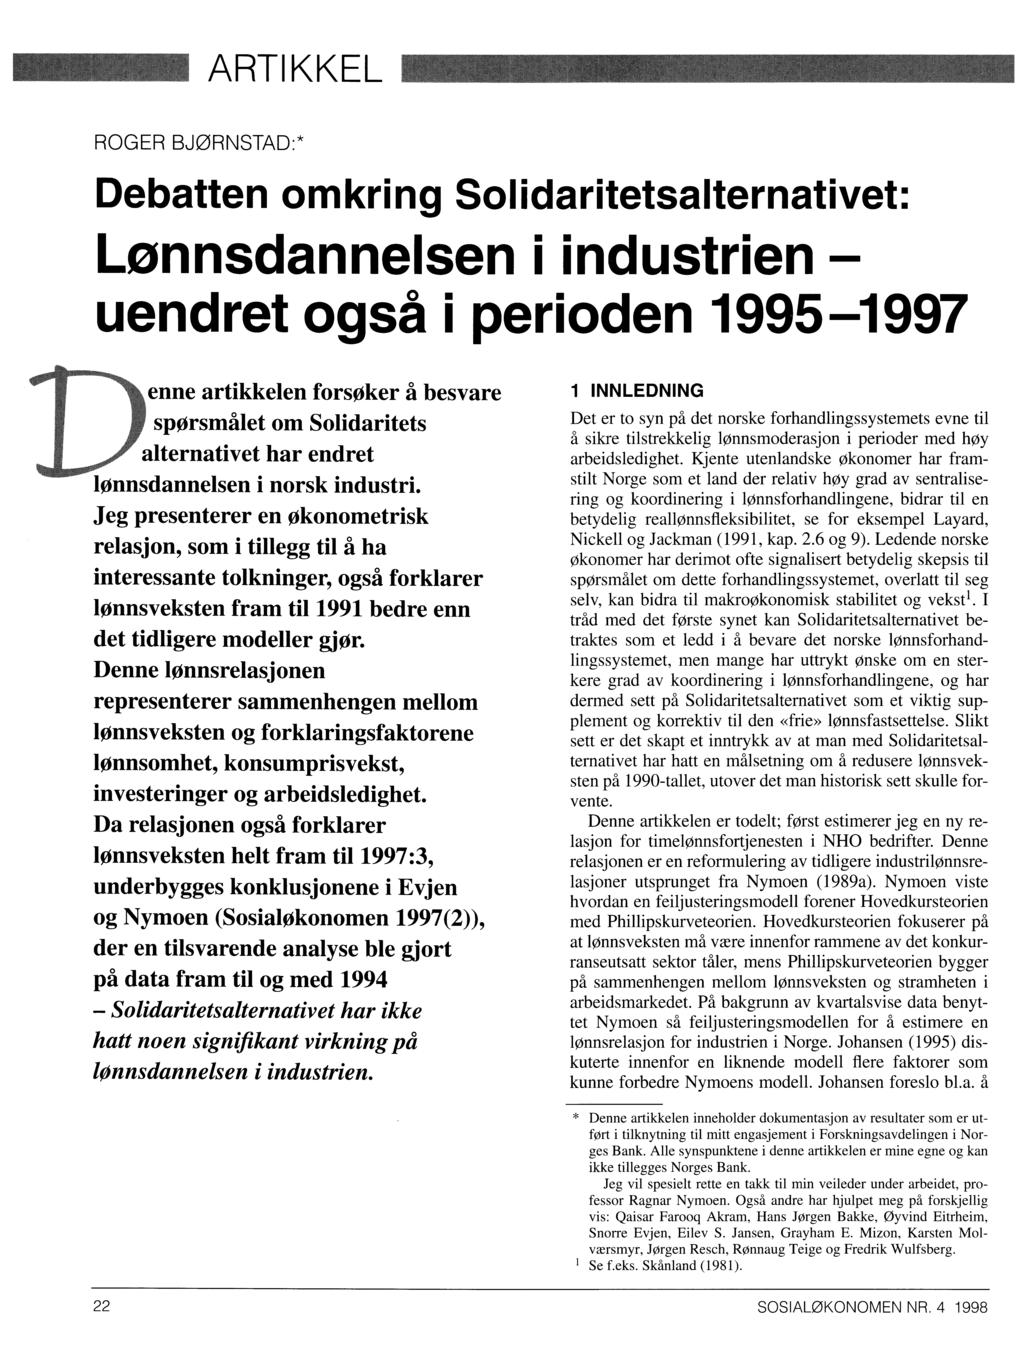 ARTIKKEL ROGER BJØRNSTAD:* Debatten omkring Solidaritetsalternativet: Lonnsdannelsen i industrien uendret også i perioden 1995-1997 nenne artikkelen forsøker å besvare spørsmålet om Solidaritets